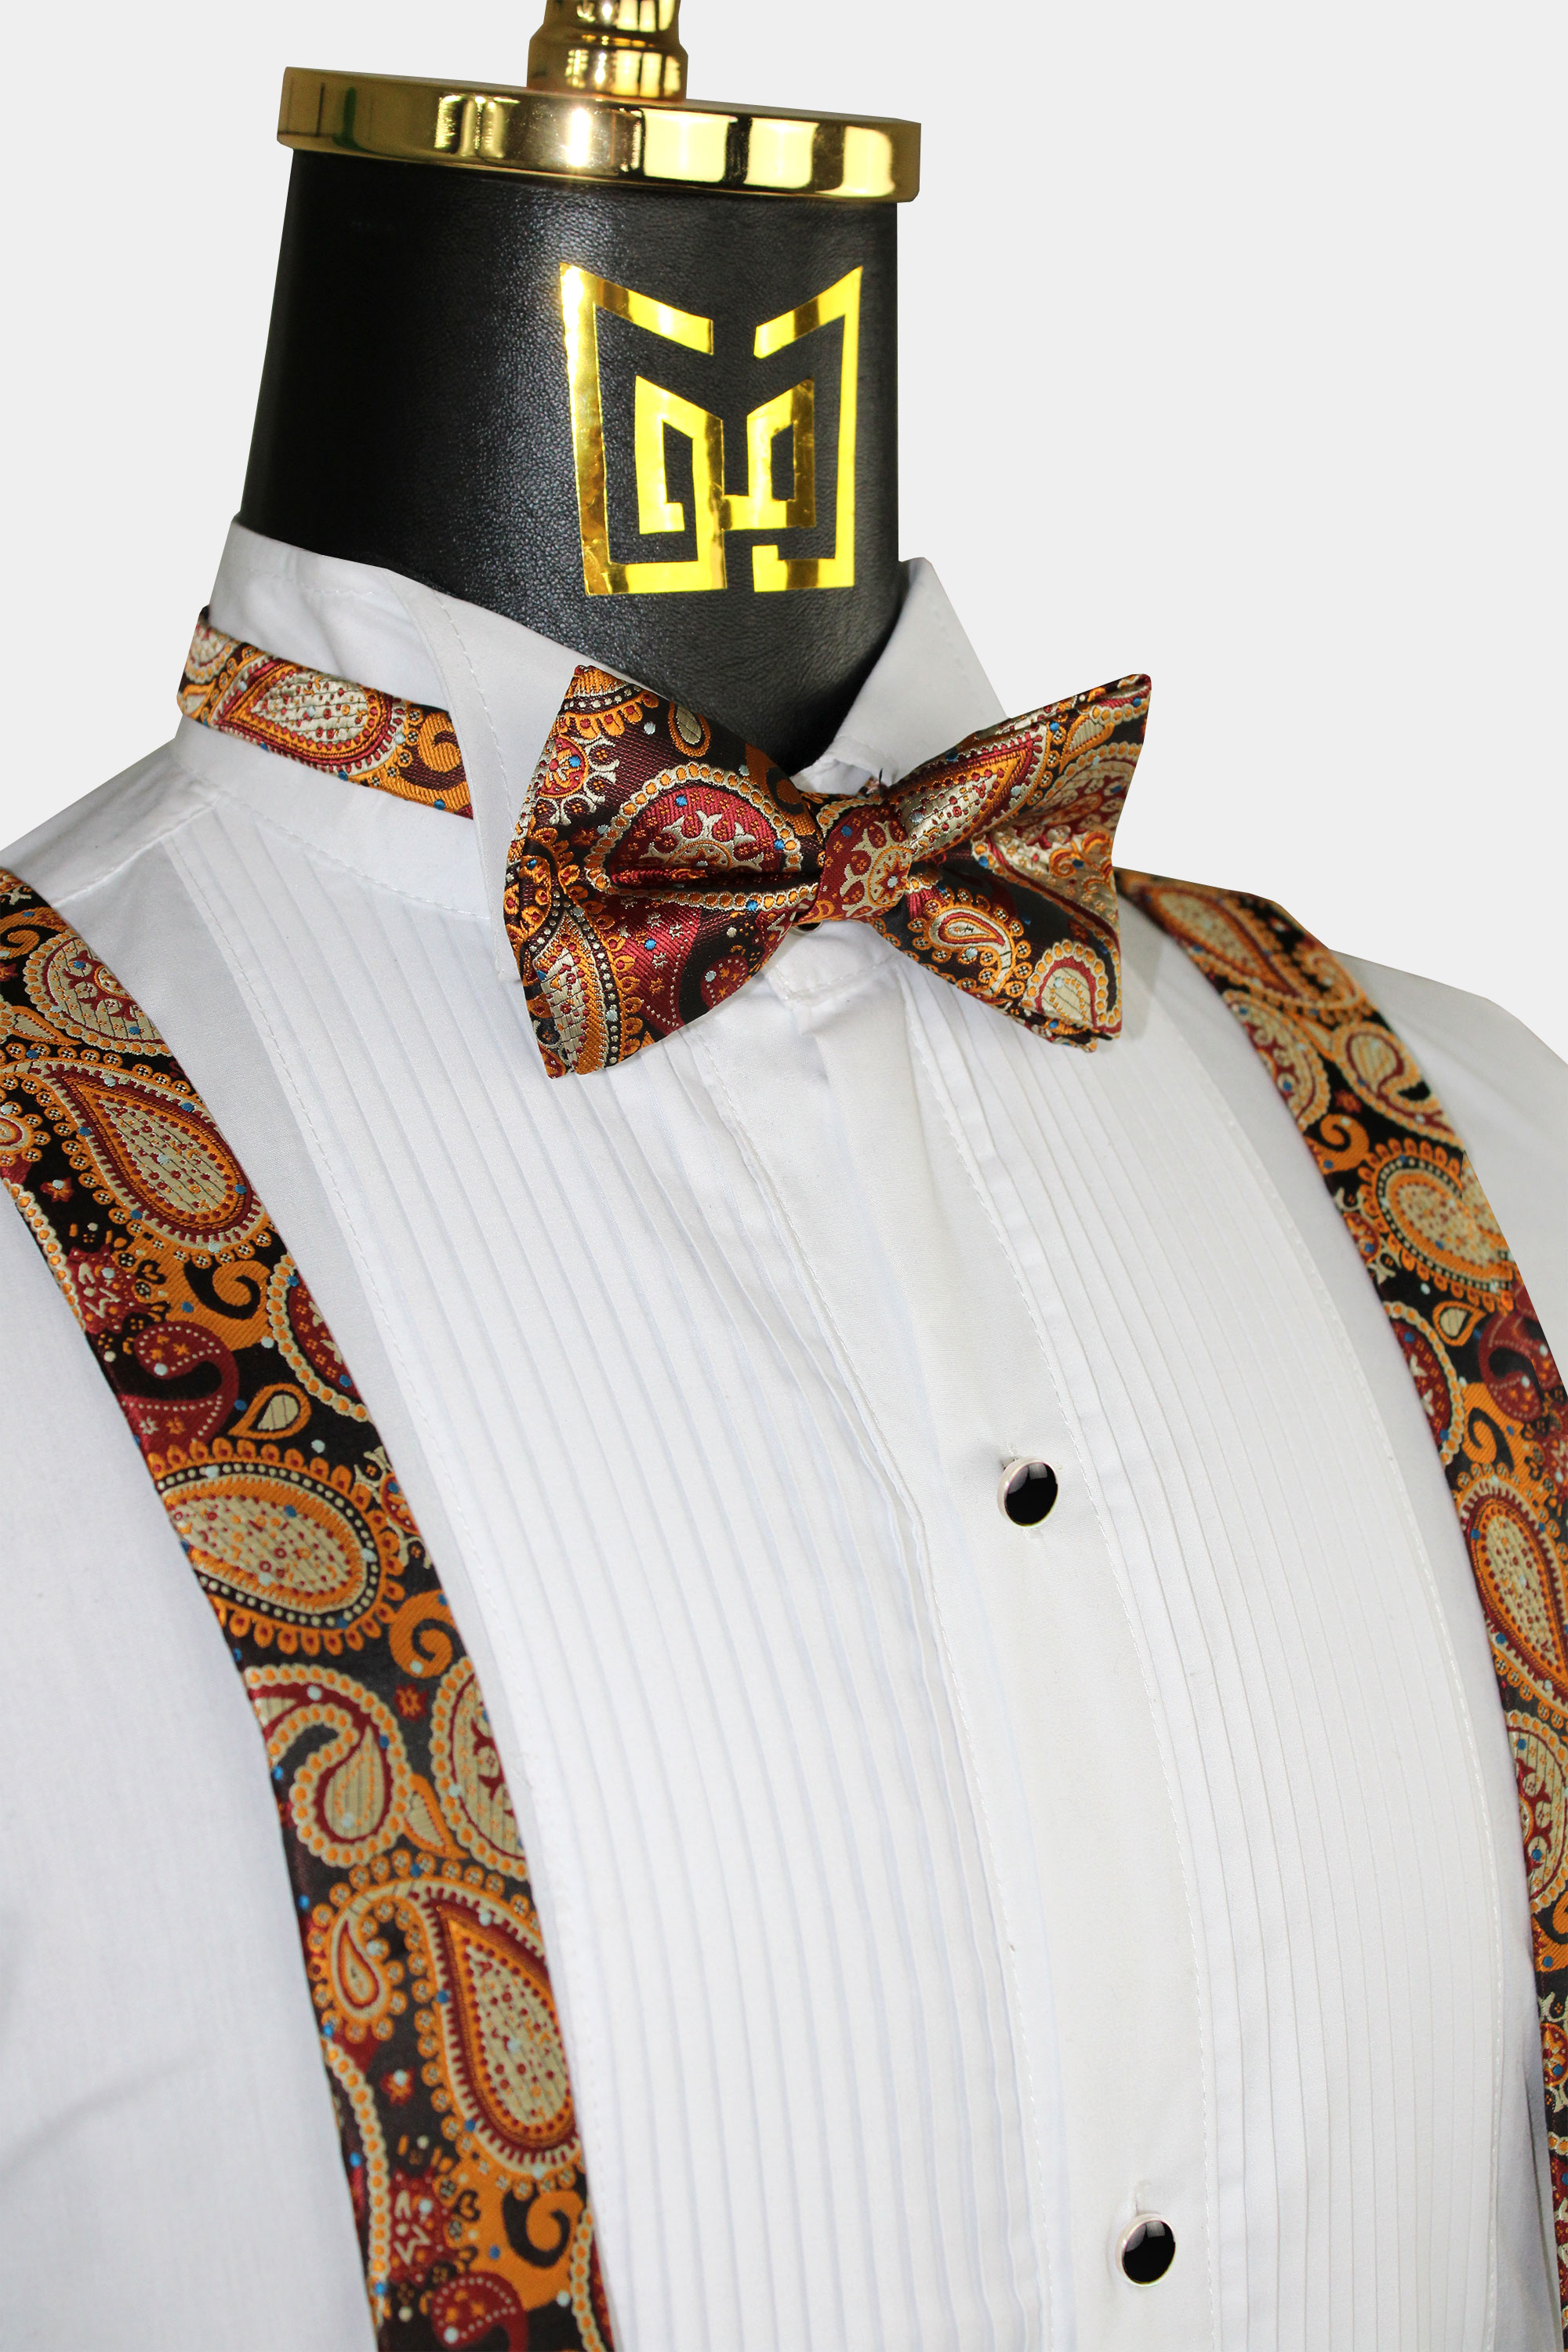 Paisley-Burnt-Orange-Suspenders-and-Bow-Tie-Set-Groomsmen-Wedding-from-Gentlemansguru.com